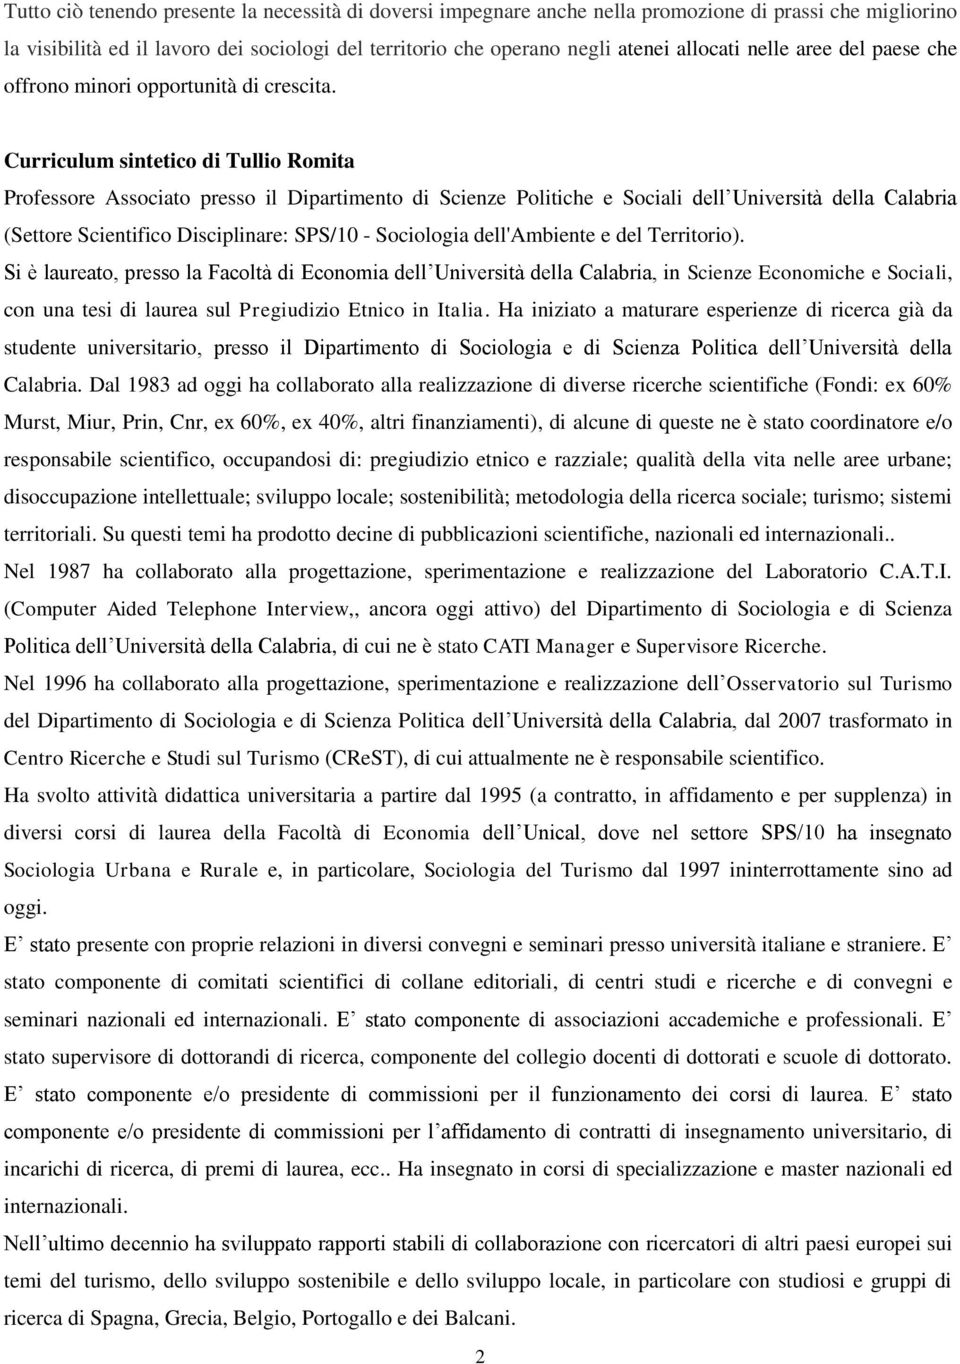 Curriculum sintetico di Tullio Romita Professore Associato presso il Dipartimento di Scienze Politiche e Sociali dell Università della Calabria (Settore Scientifico Disciplinare: SPS/10 - Sociologia